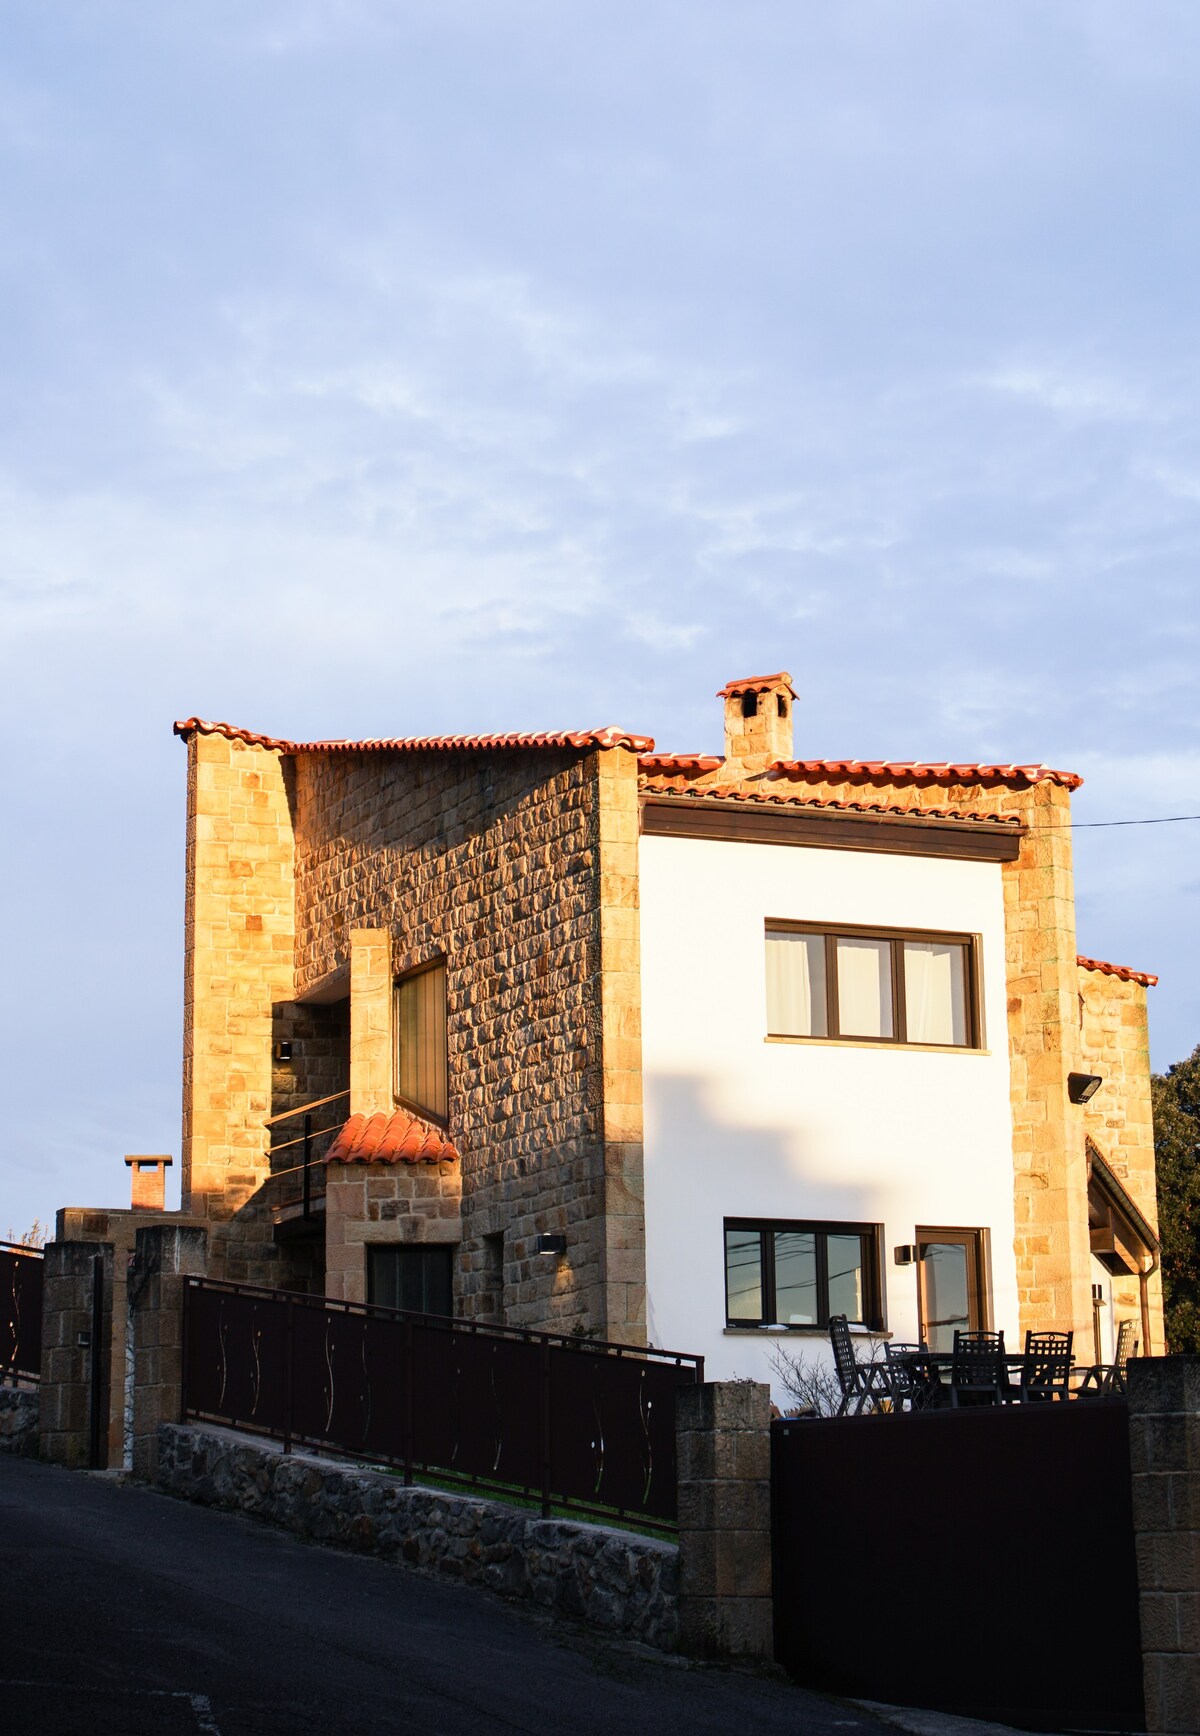 La Jarocha, casa con vistas al mar en Pechón